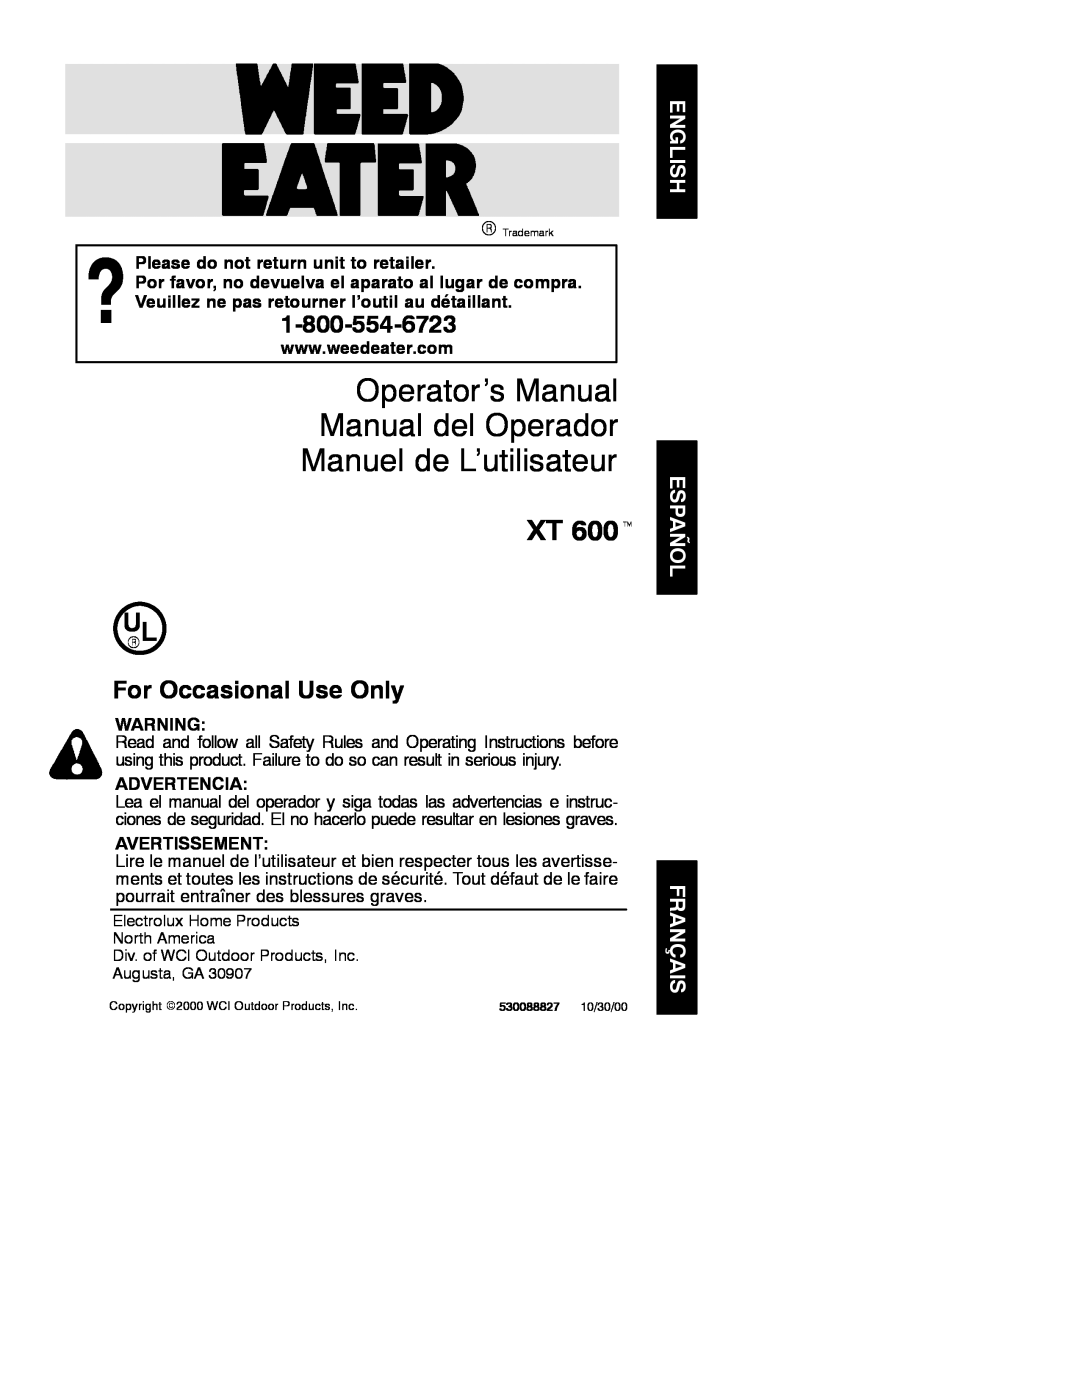 Weed Eater 530088827 manual Operator’s Manual Manual del Operador Manuel de L’utilisateur, XT 600t, Advertencia 